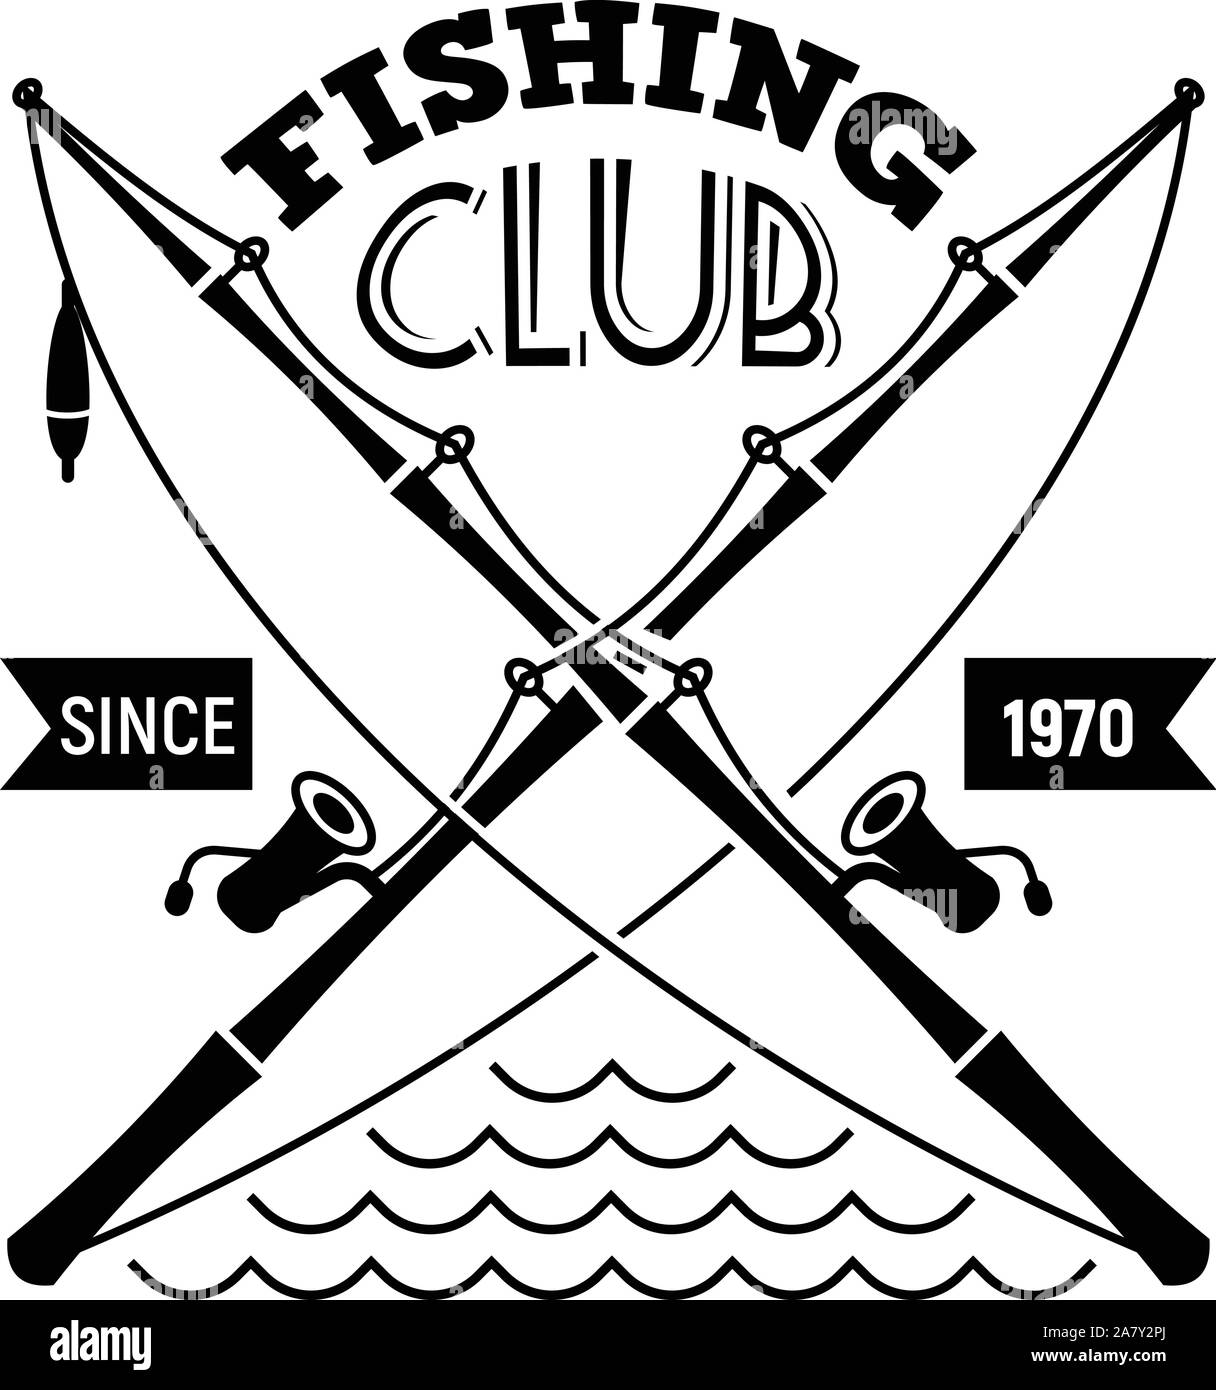 https://c8.alamy.com/compde/2a7y2pj/fishing-club-logo-einfachen-stil-2a7y2pj.jpg